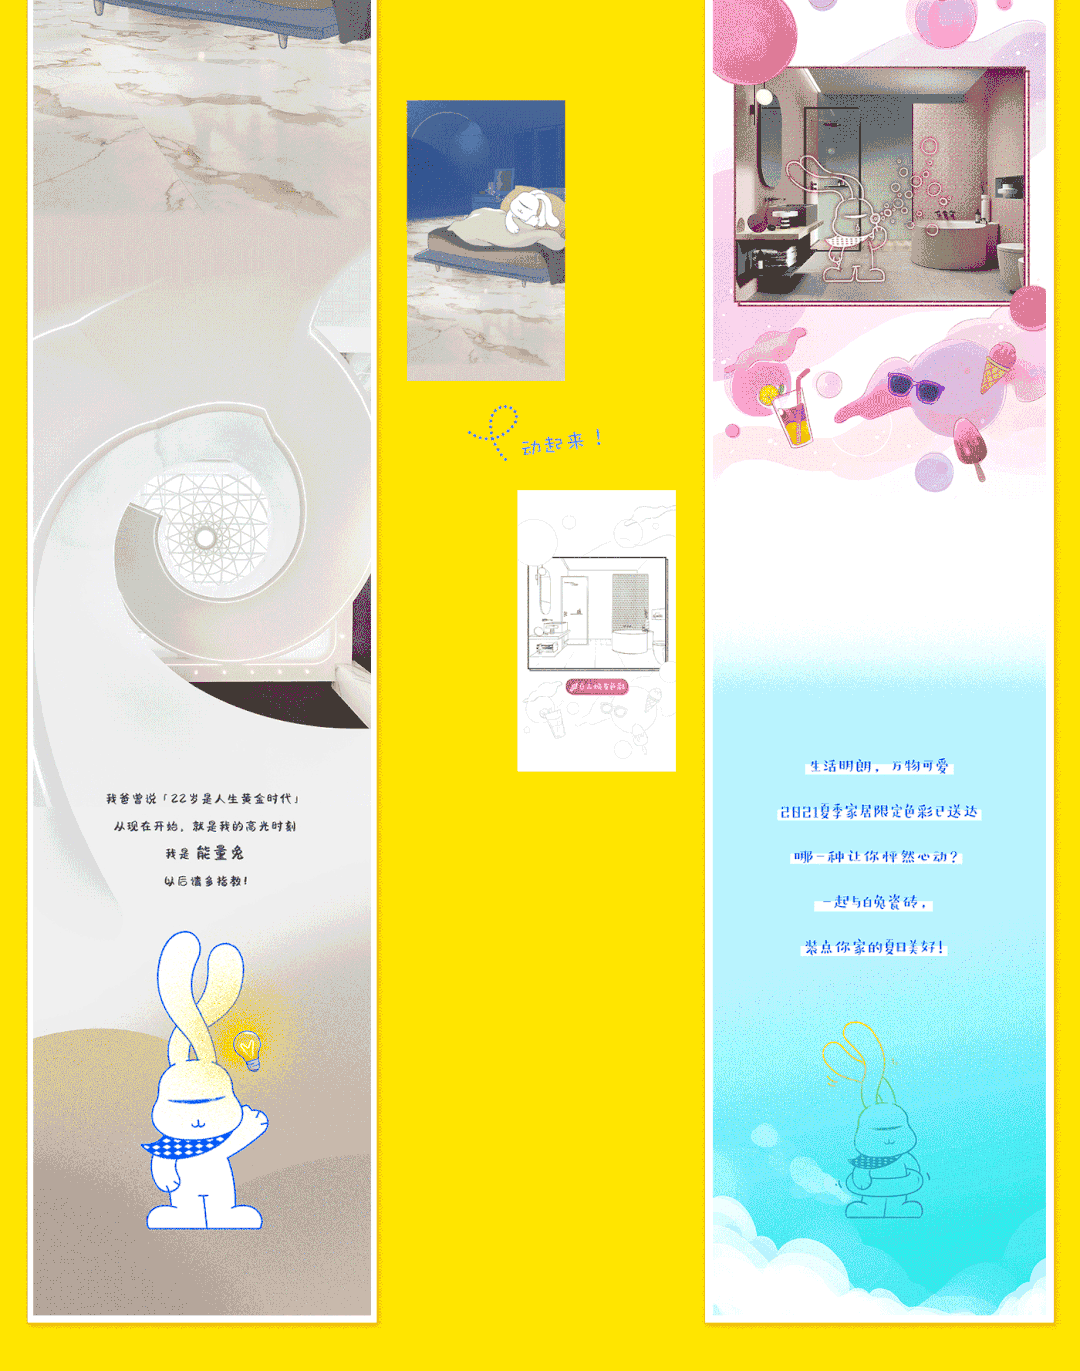 【插画设计】‘白兔瓷砖’商业插画之长图/节气和节日营销海报图3